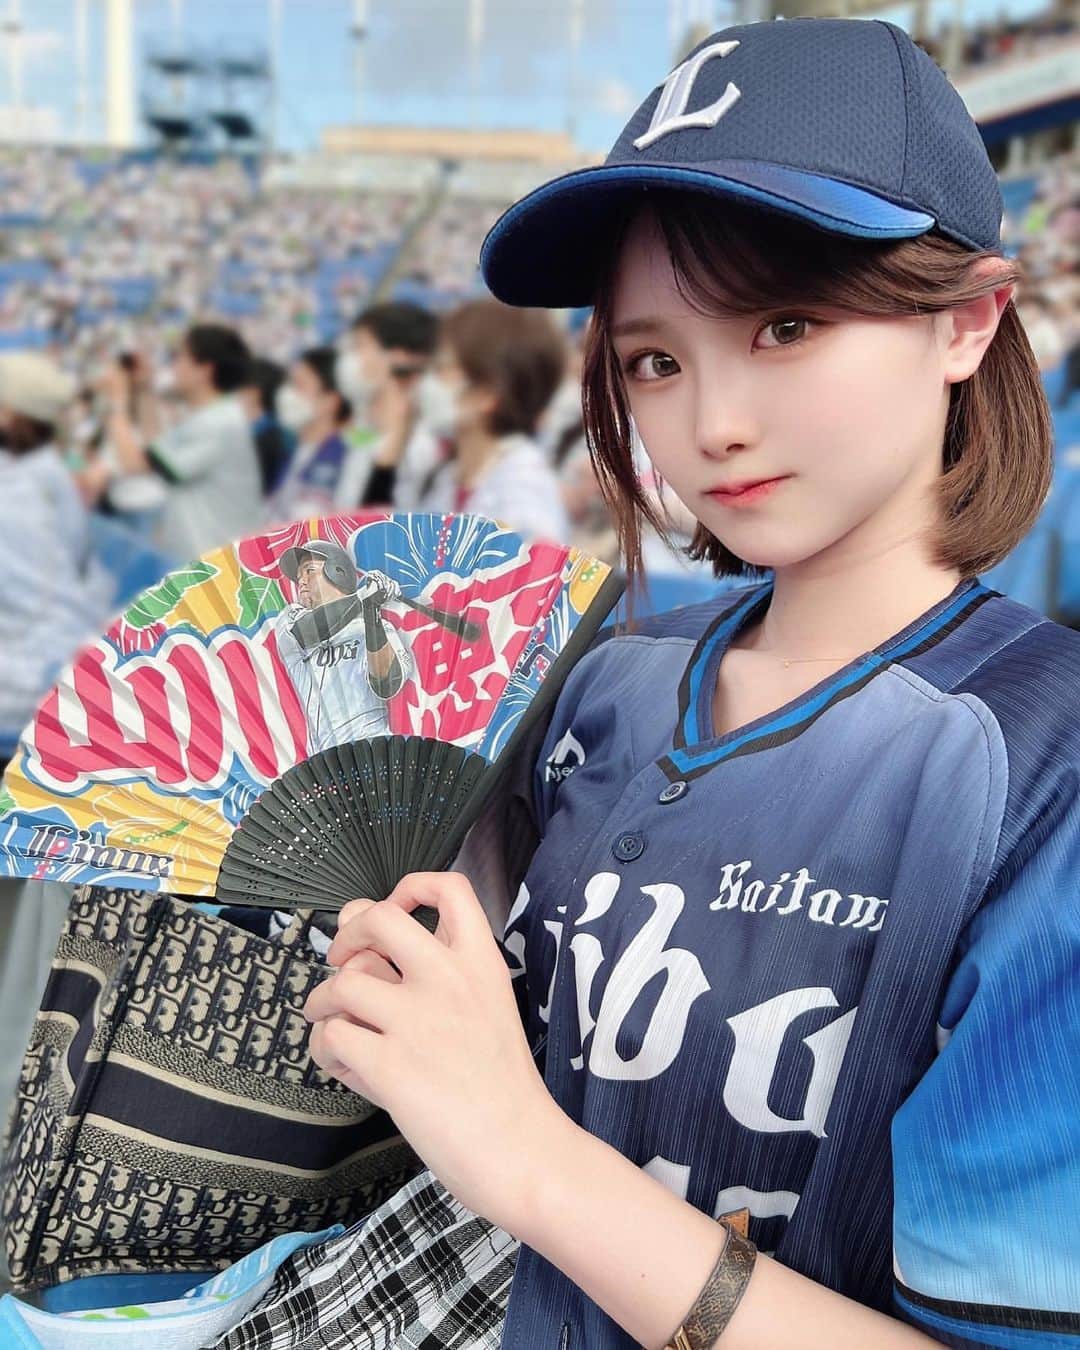 インスタ野球女子 公式アカウント さんのインスタグラム写真 インスタ野球女子 公式アカウント Instagram こんばんは ライオンズ女子 をご紹介していきます とっても美人さん ᵕᴗᵕ Yoshida Megumi さんのアカウントも是非覗いて